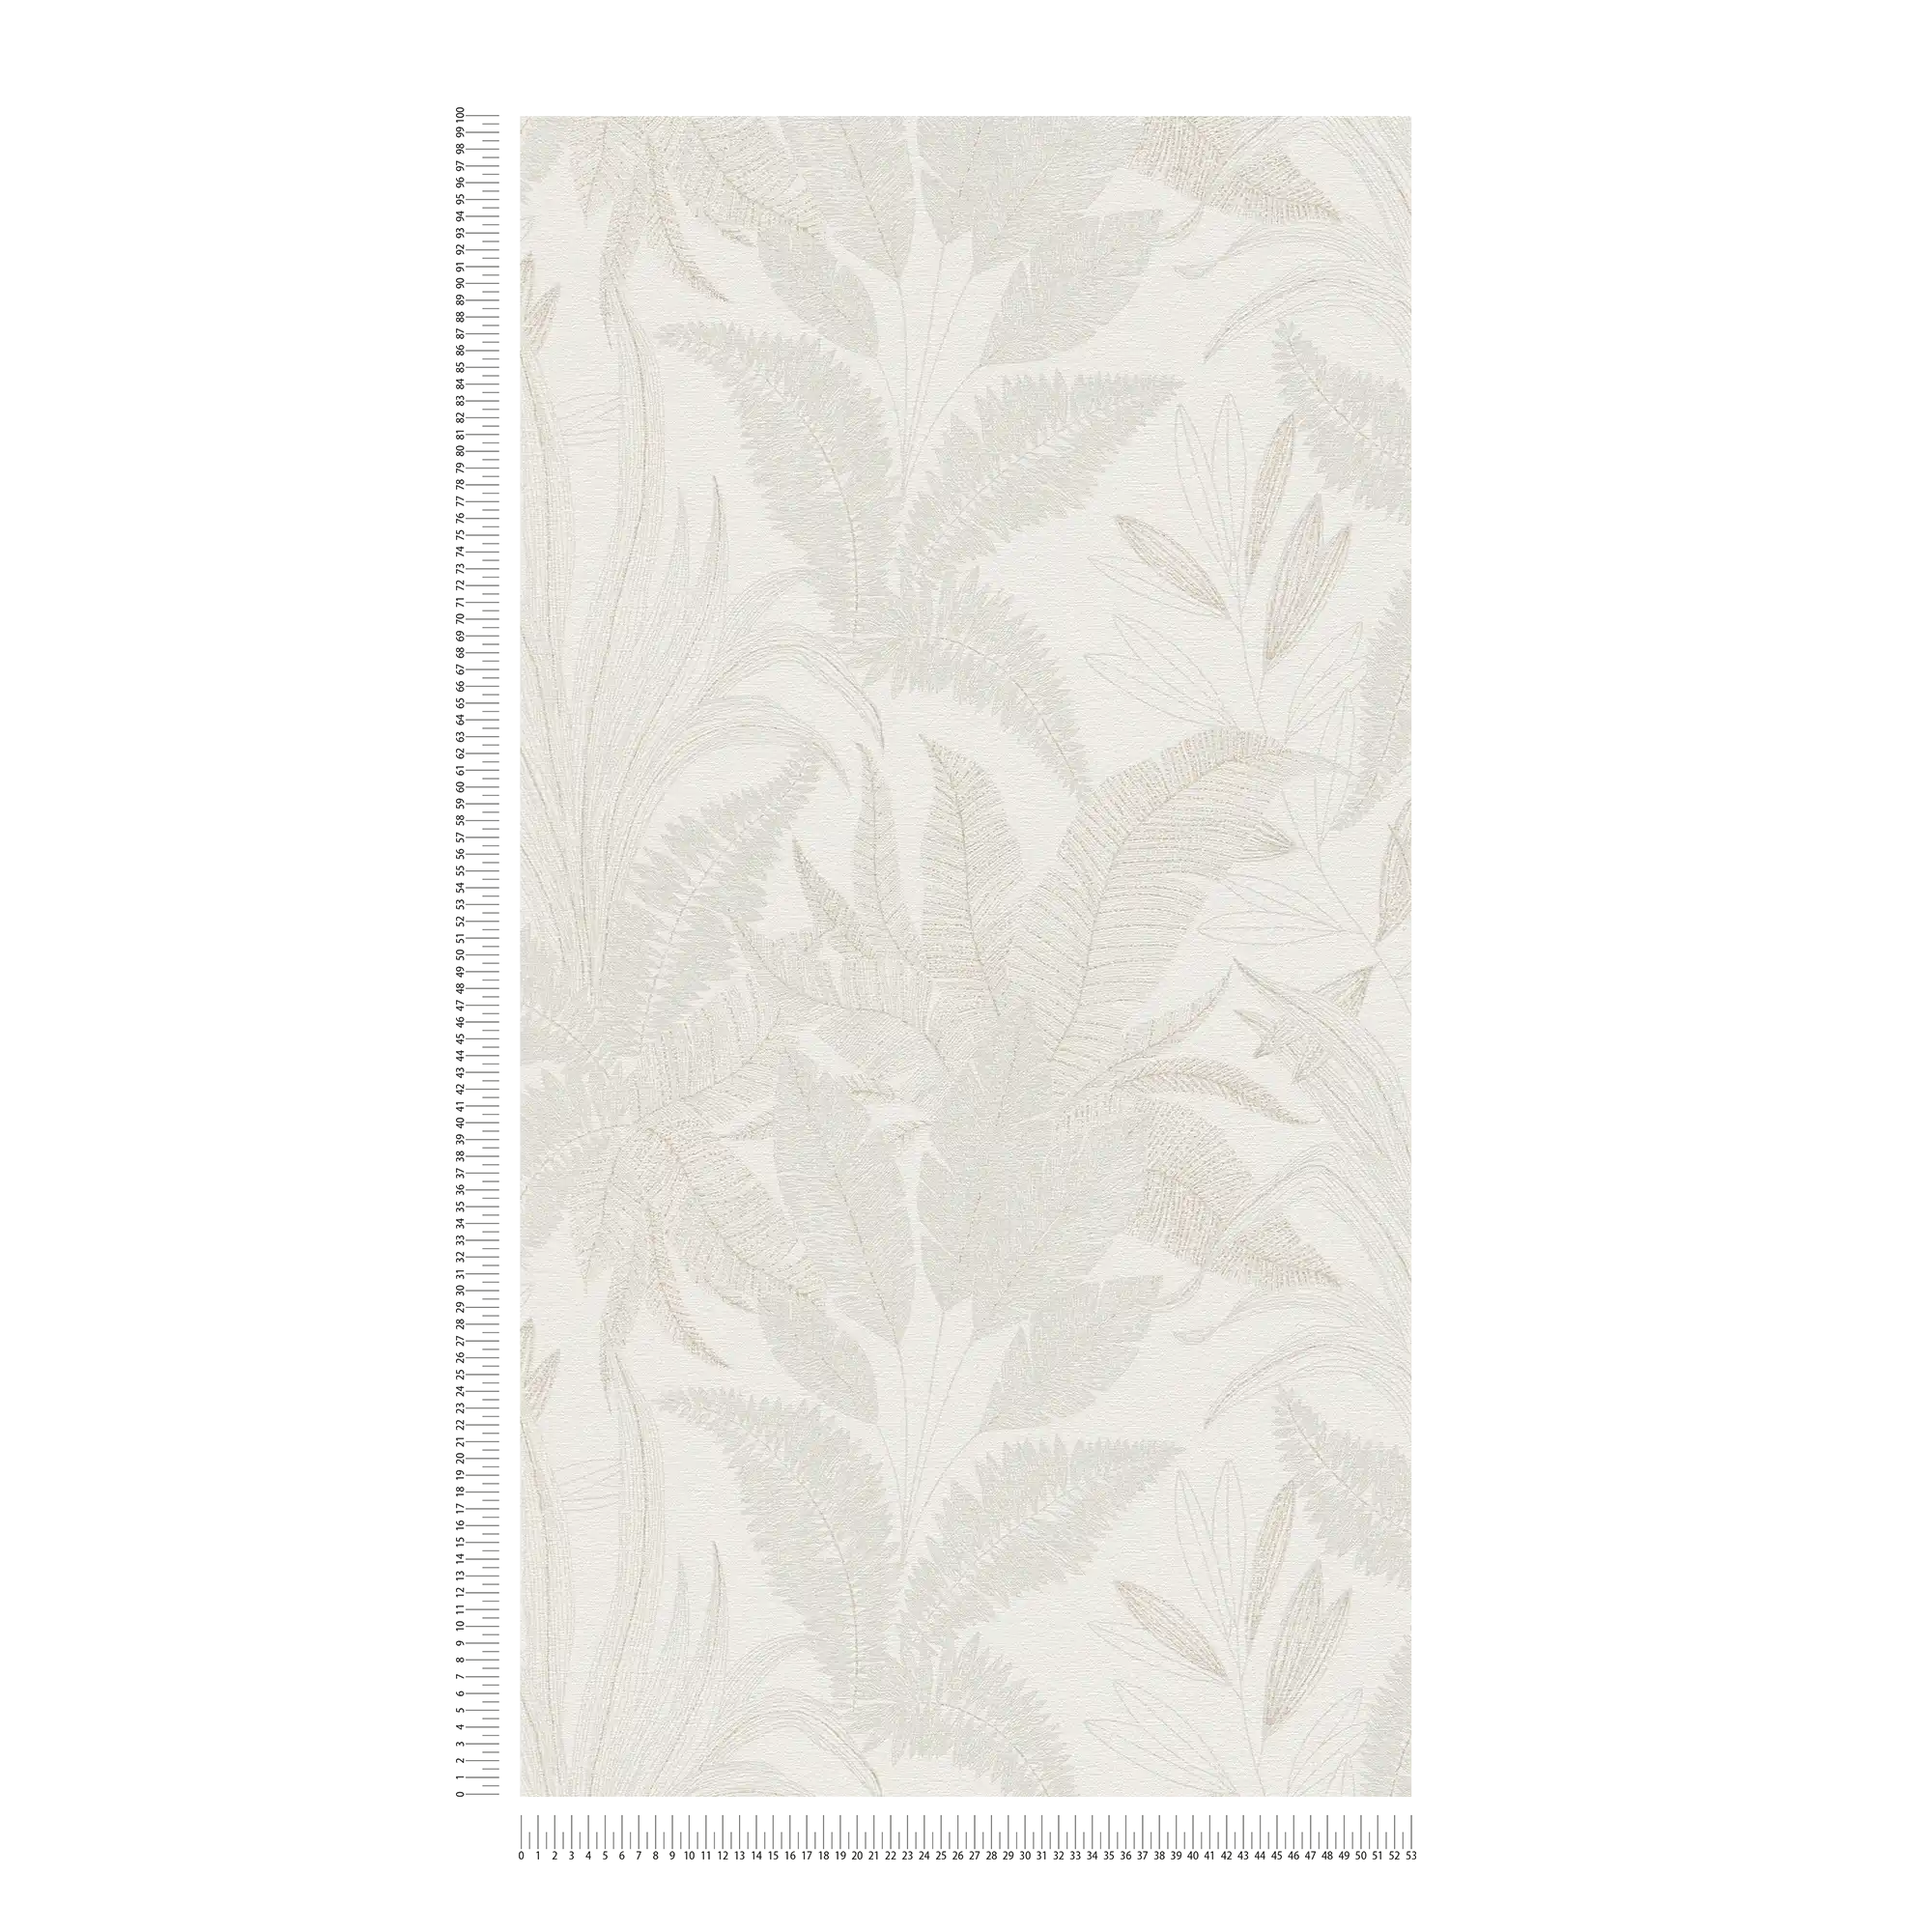             Papel pintado tejido-no tejido floral con motivo de hojas en colores suaves - crema, beige
        